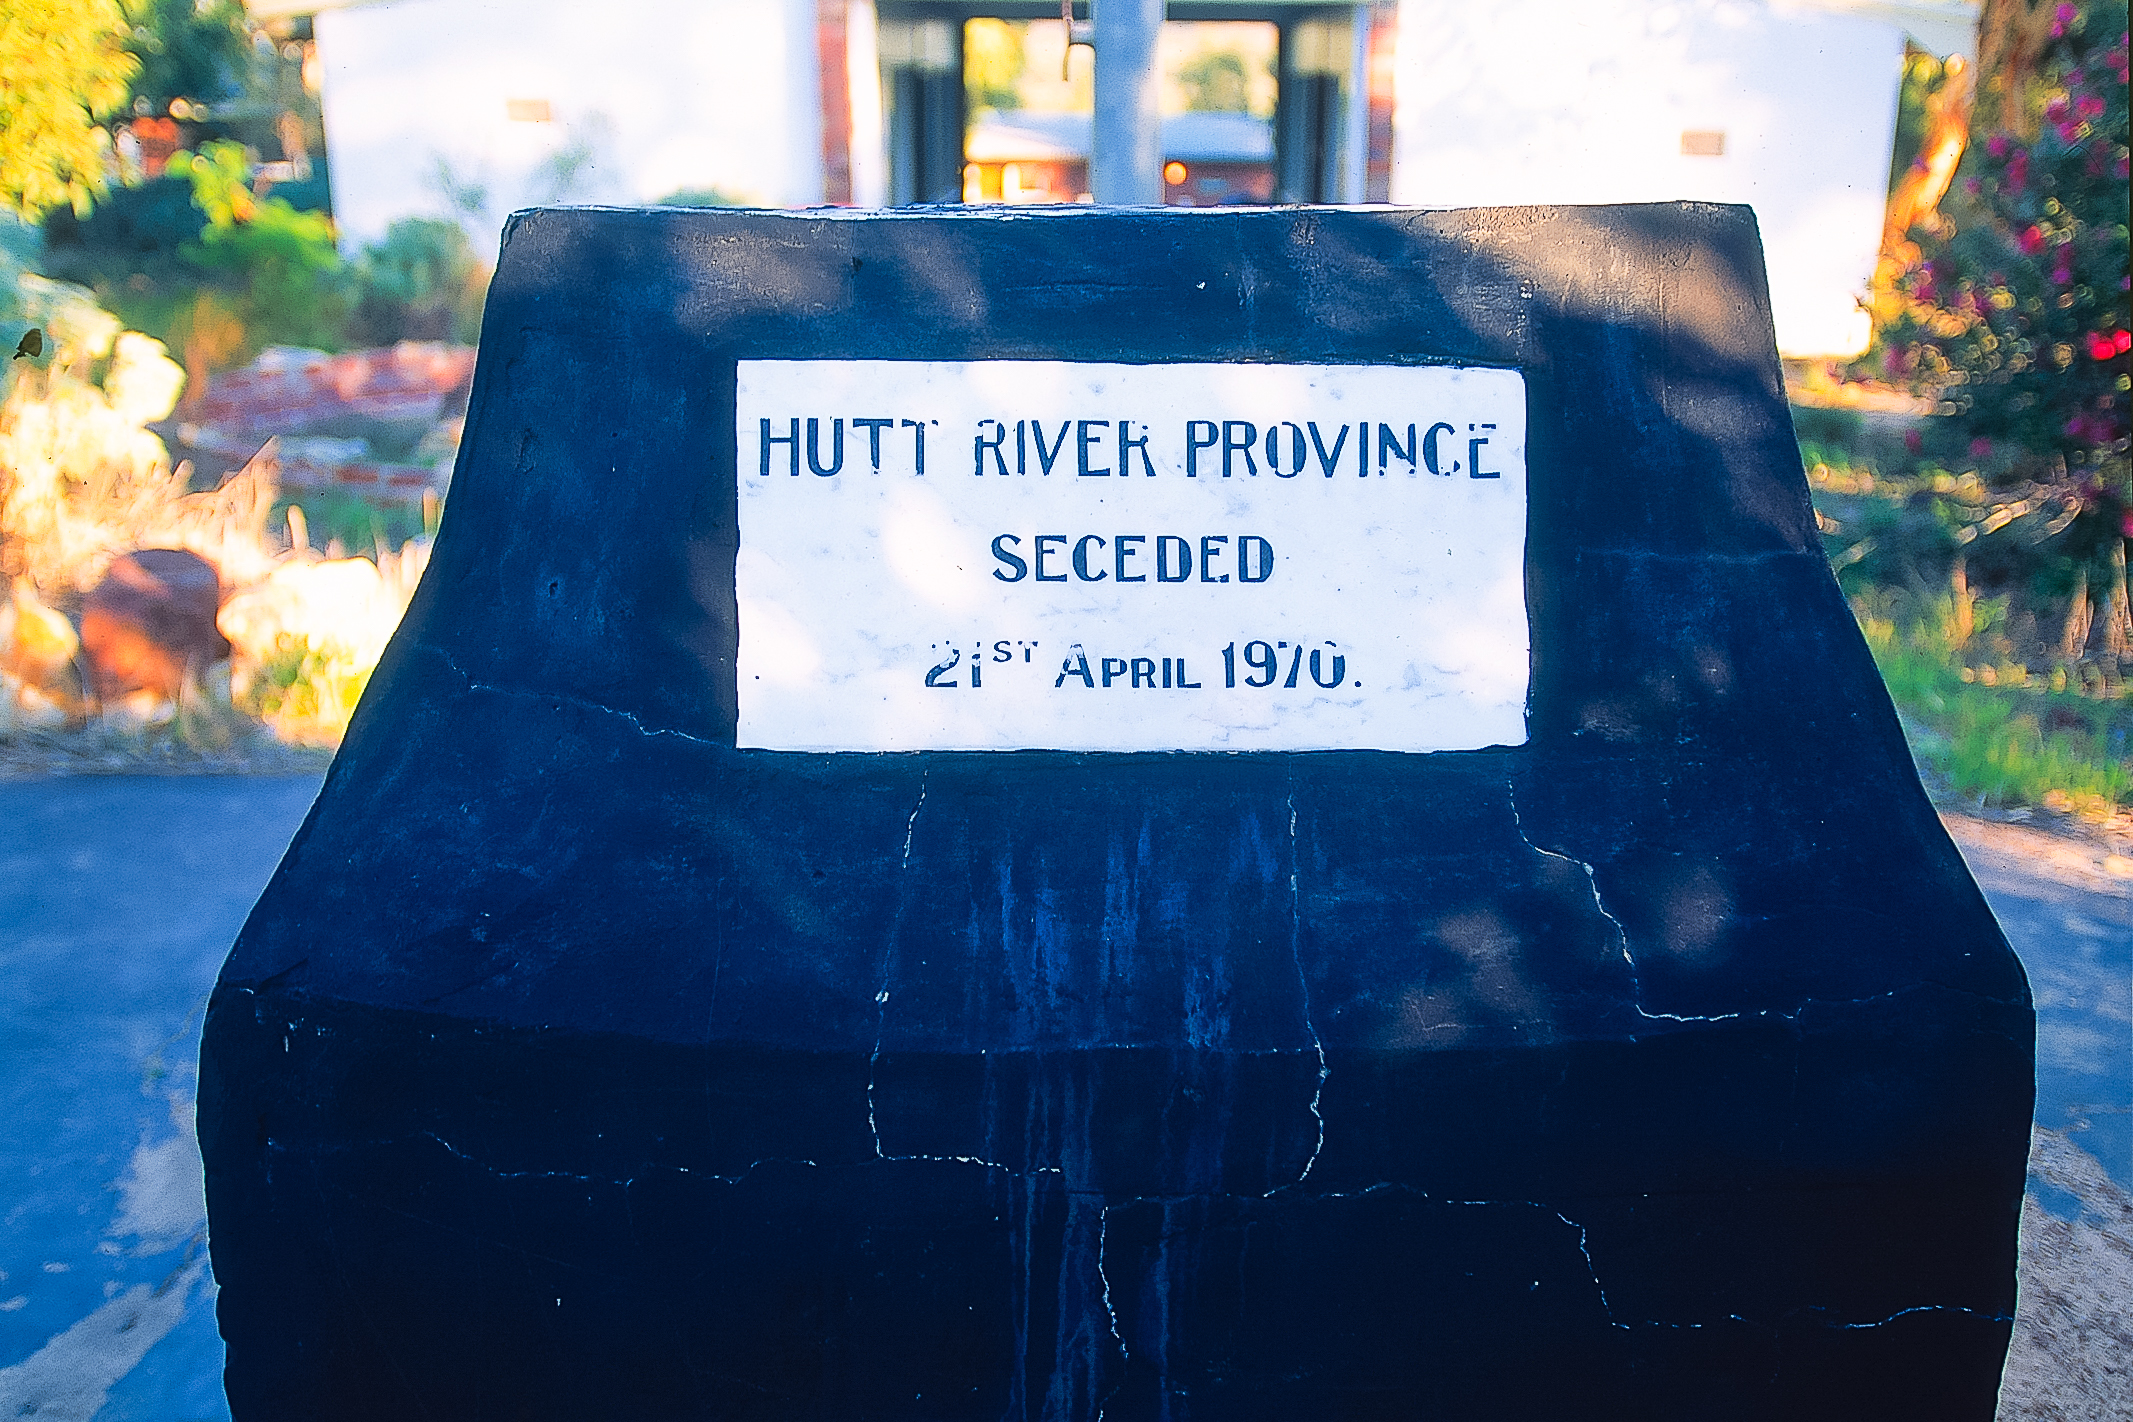 Cippo commemorativo a Nain, capitale del Principato di Hutt River. Australia (WA)nella Hutt River Province